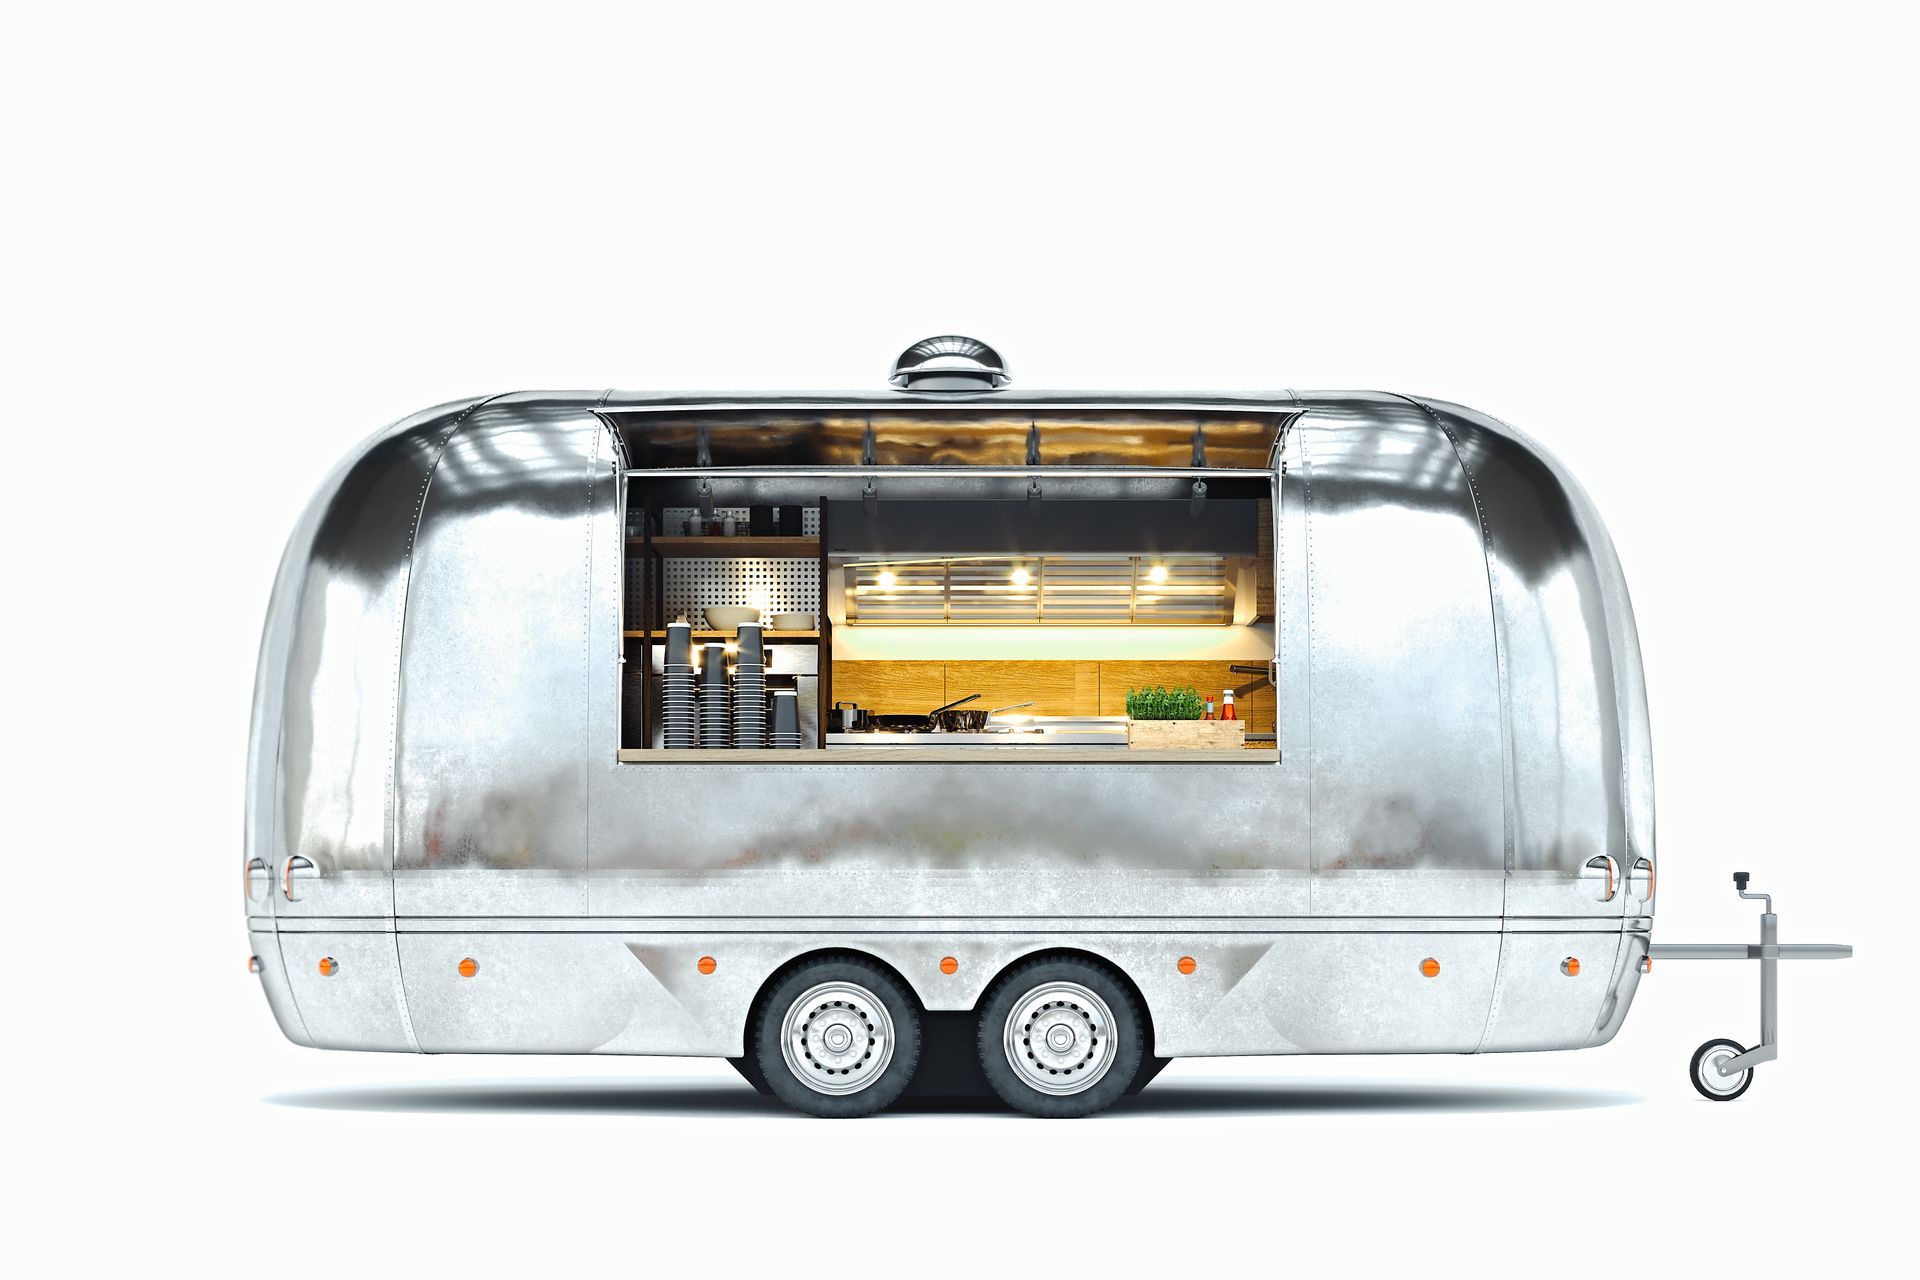 Custom Airstream coffee trailer - San Diego Food Truck Pros